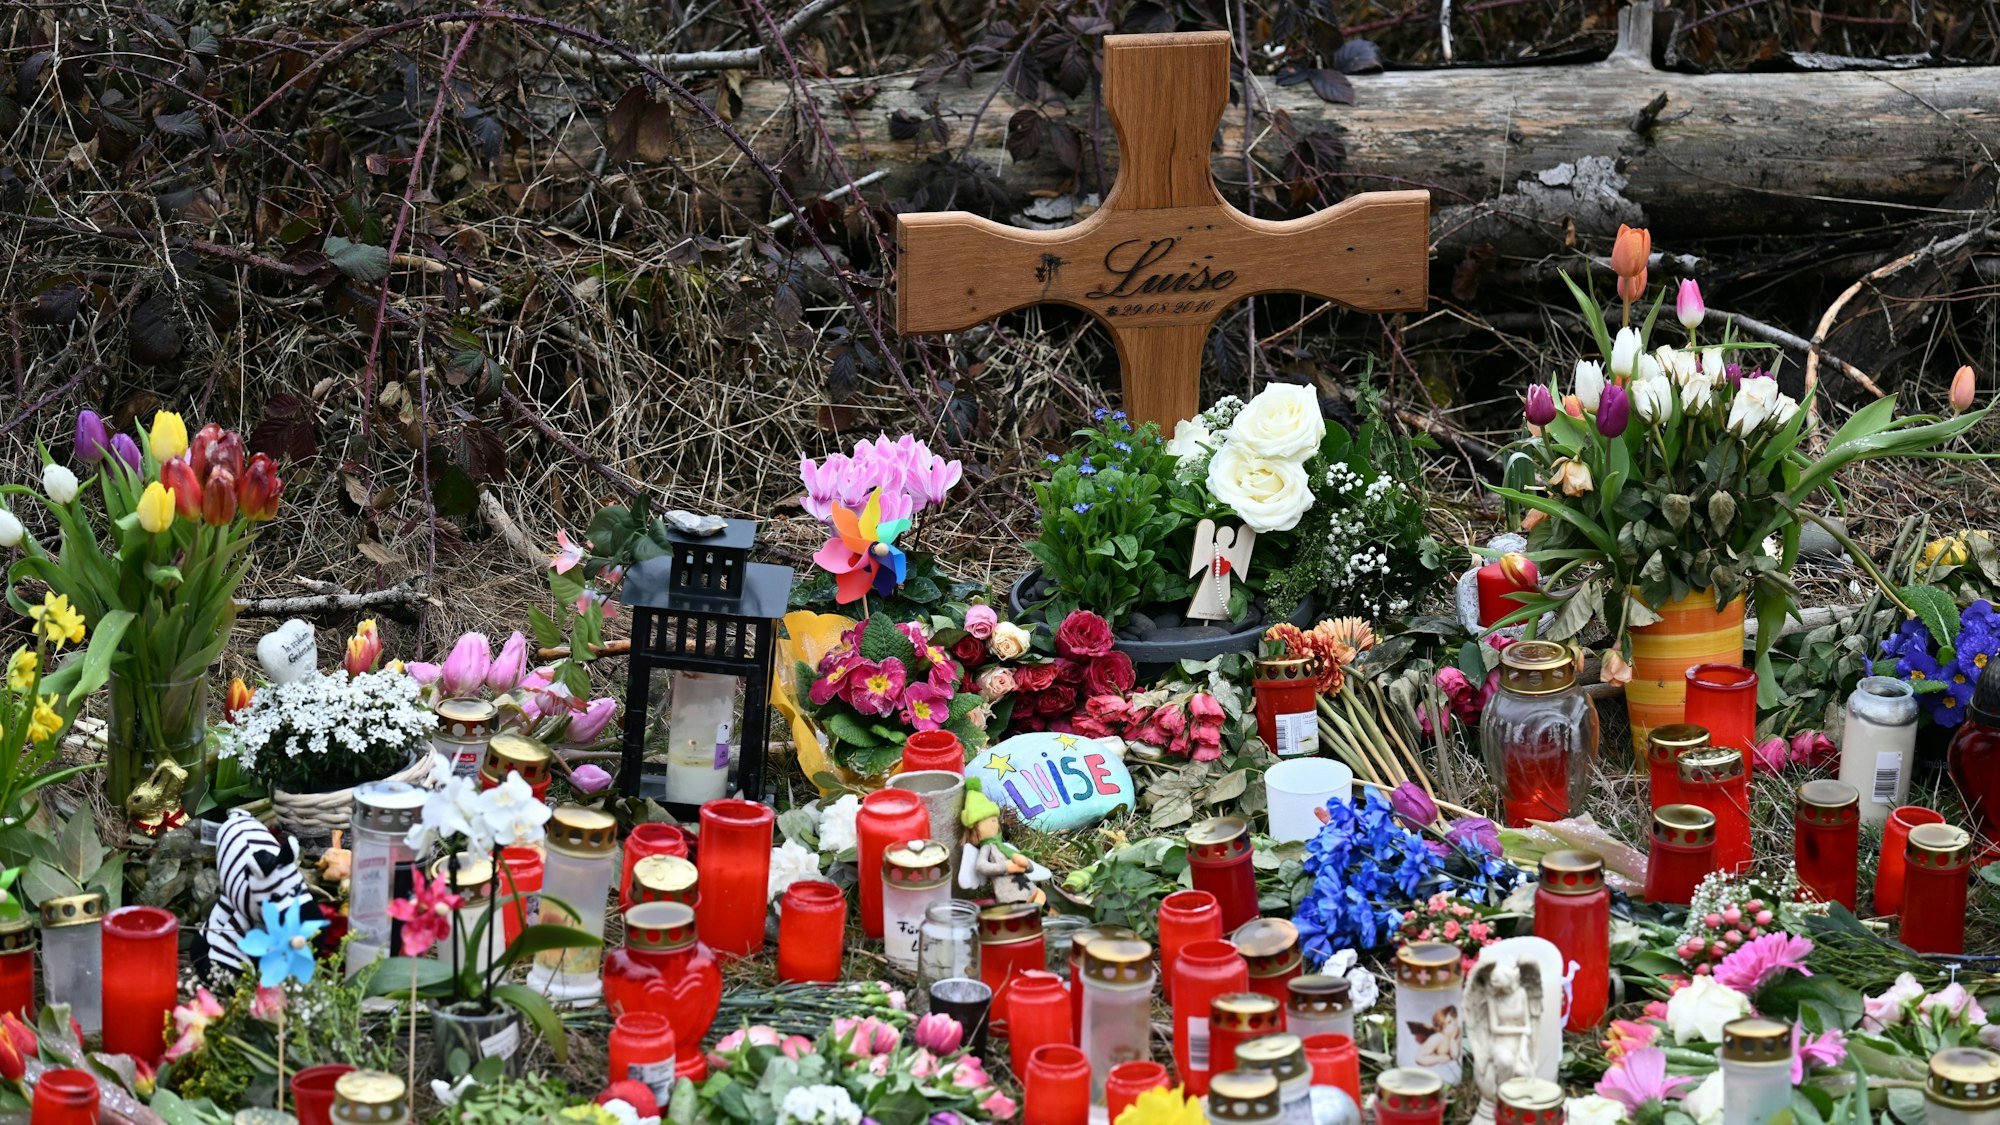 Der Tatort kurz nach dem gewaltsamen Tod der zwölfjährigen Luise. Angehörige des Mädchens aus Freudenberg im Siegerland haben Kerzen und Blumen am Tatort abgestellt.